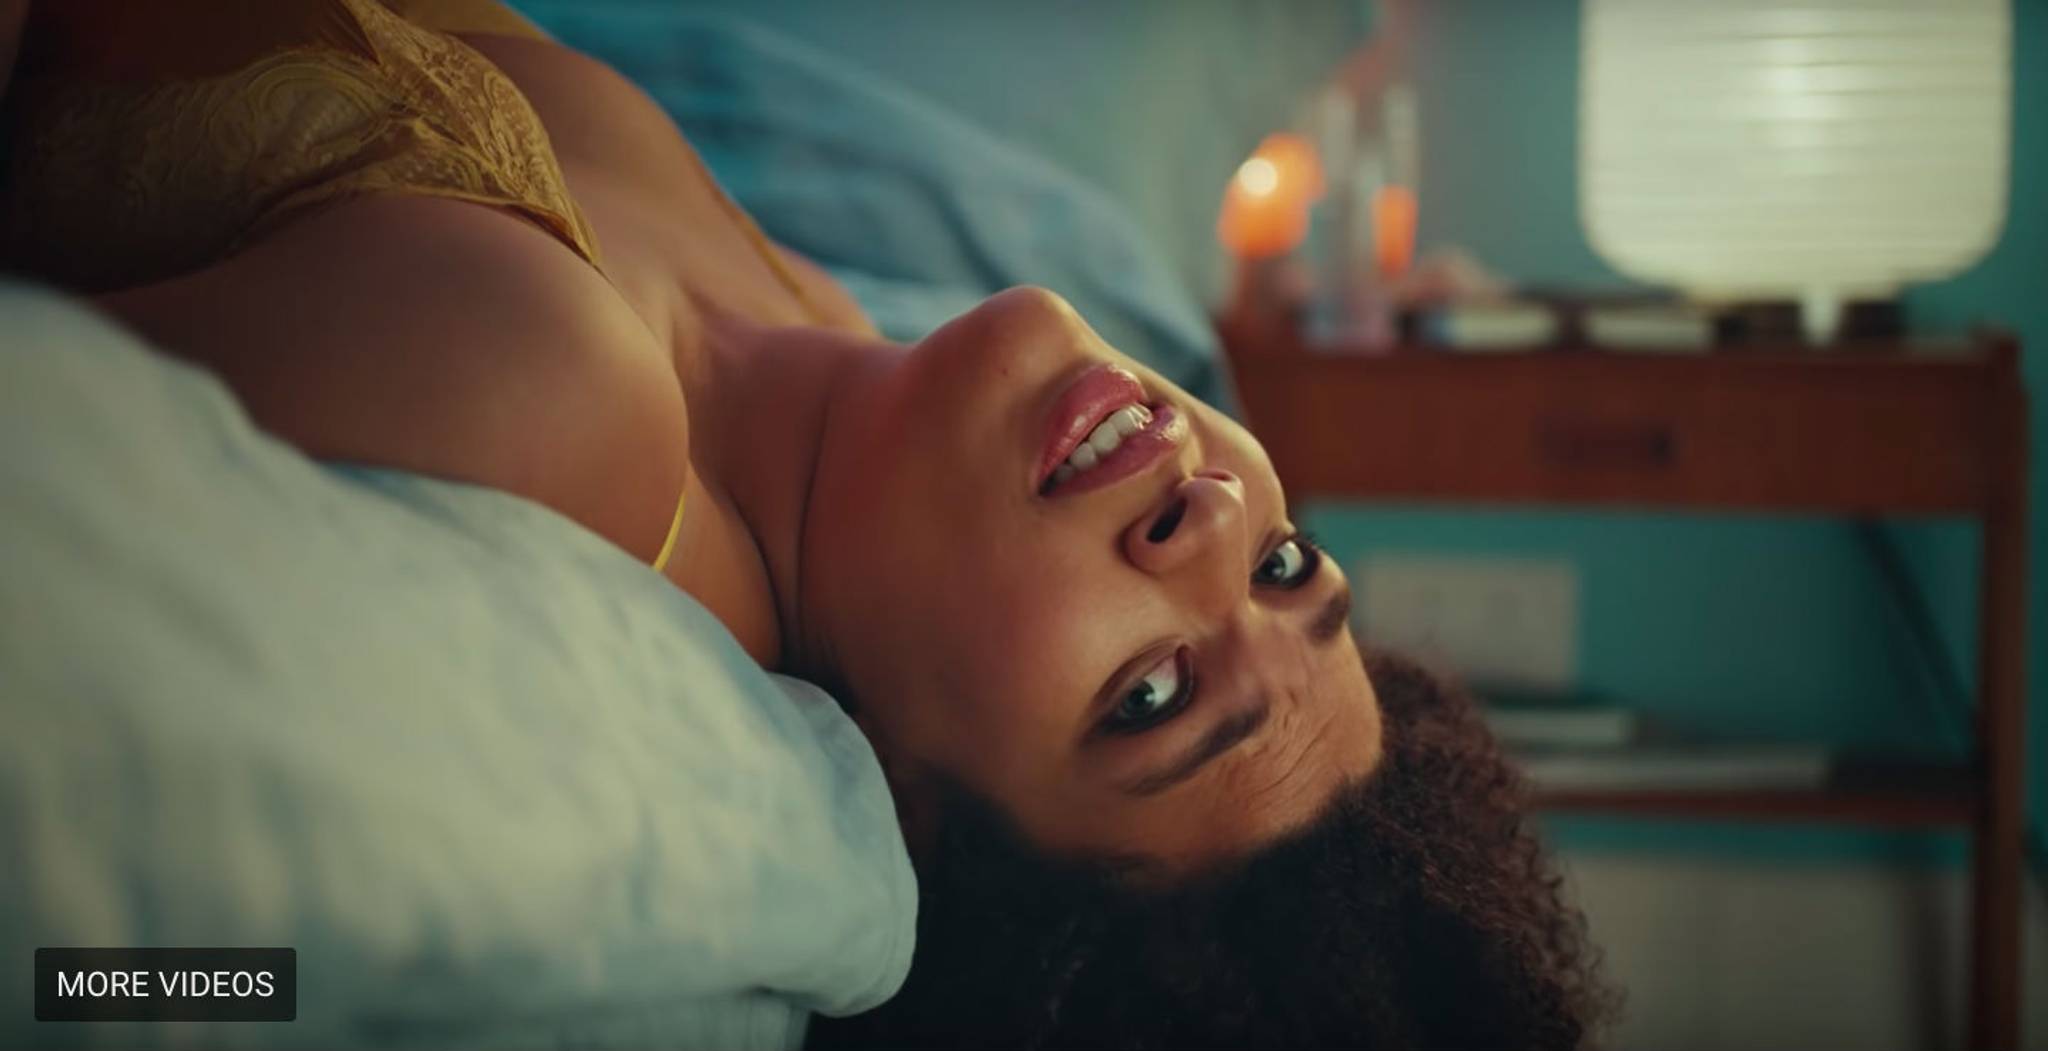 Durex lube ad challenges taboos around joy of sex